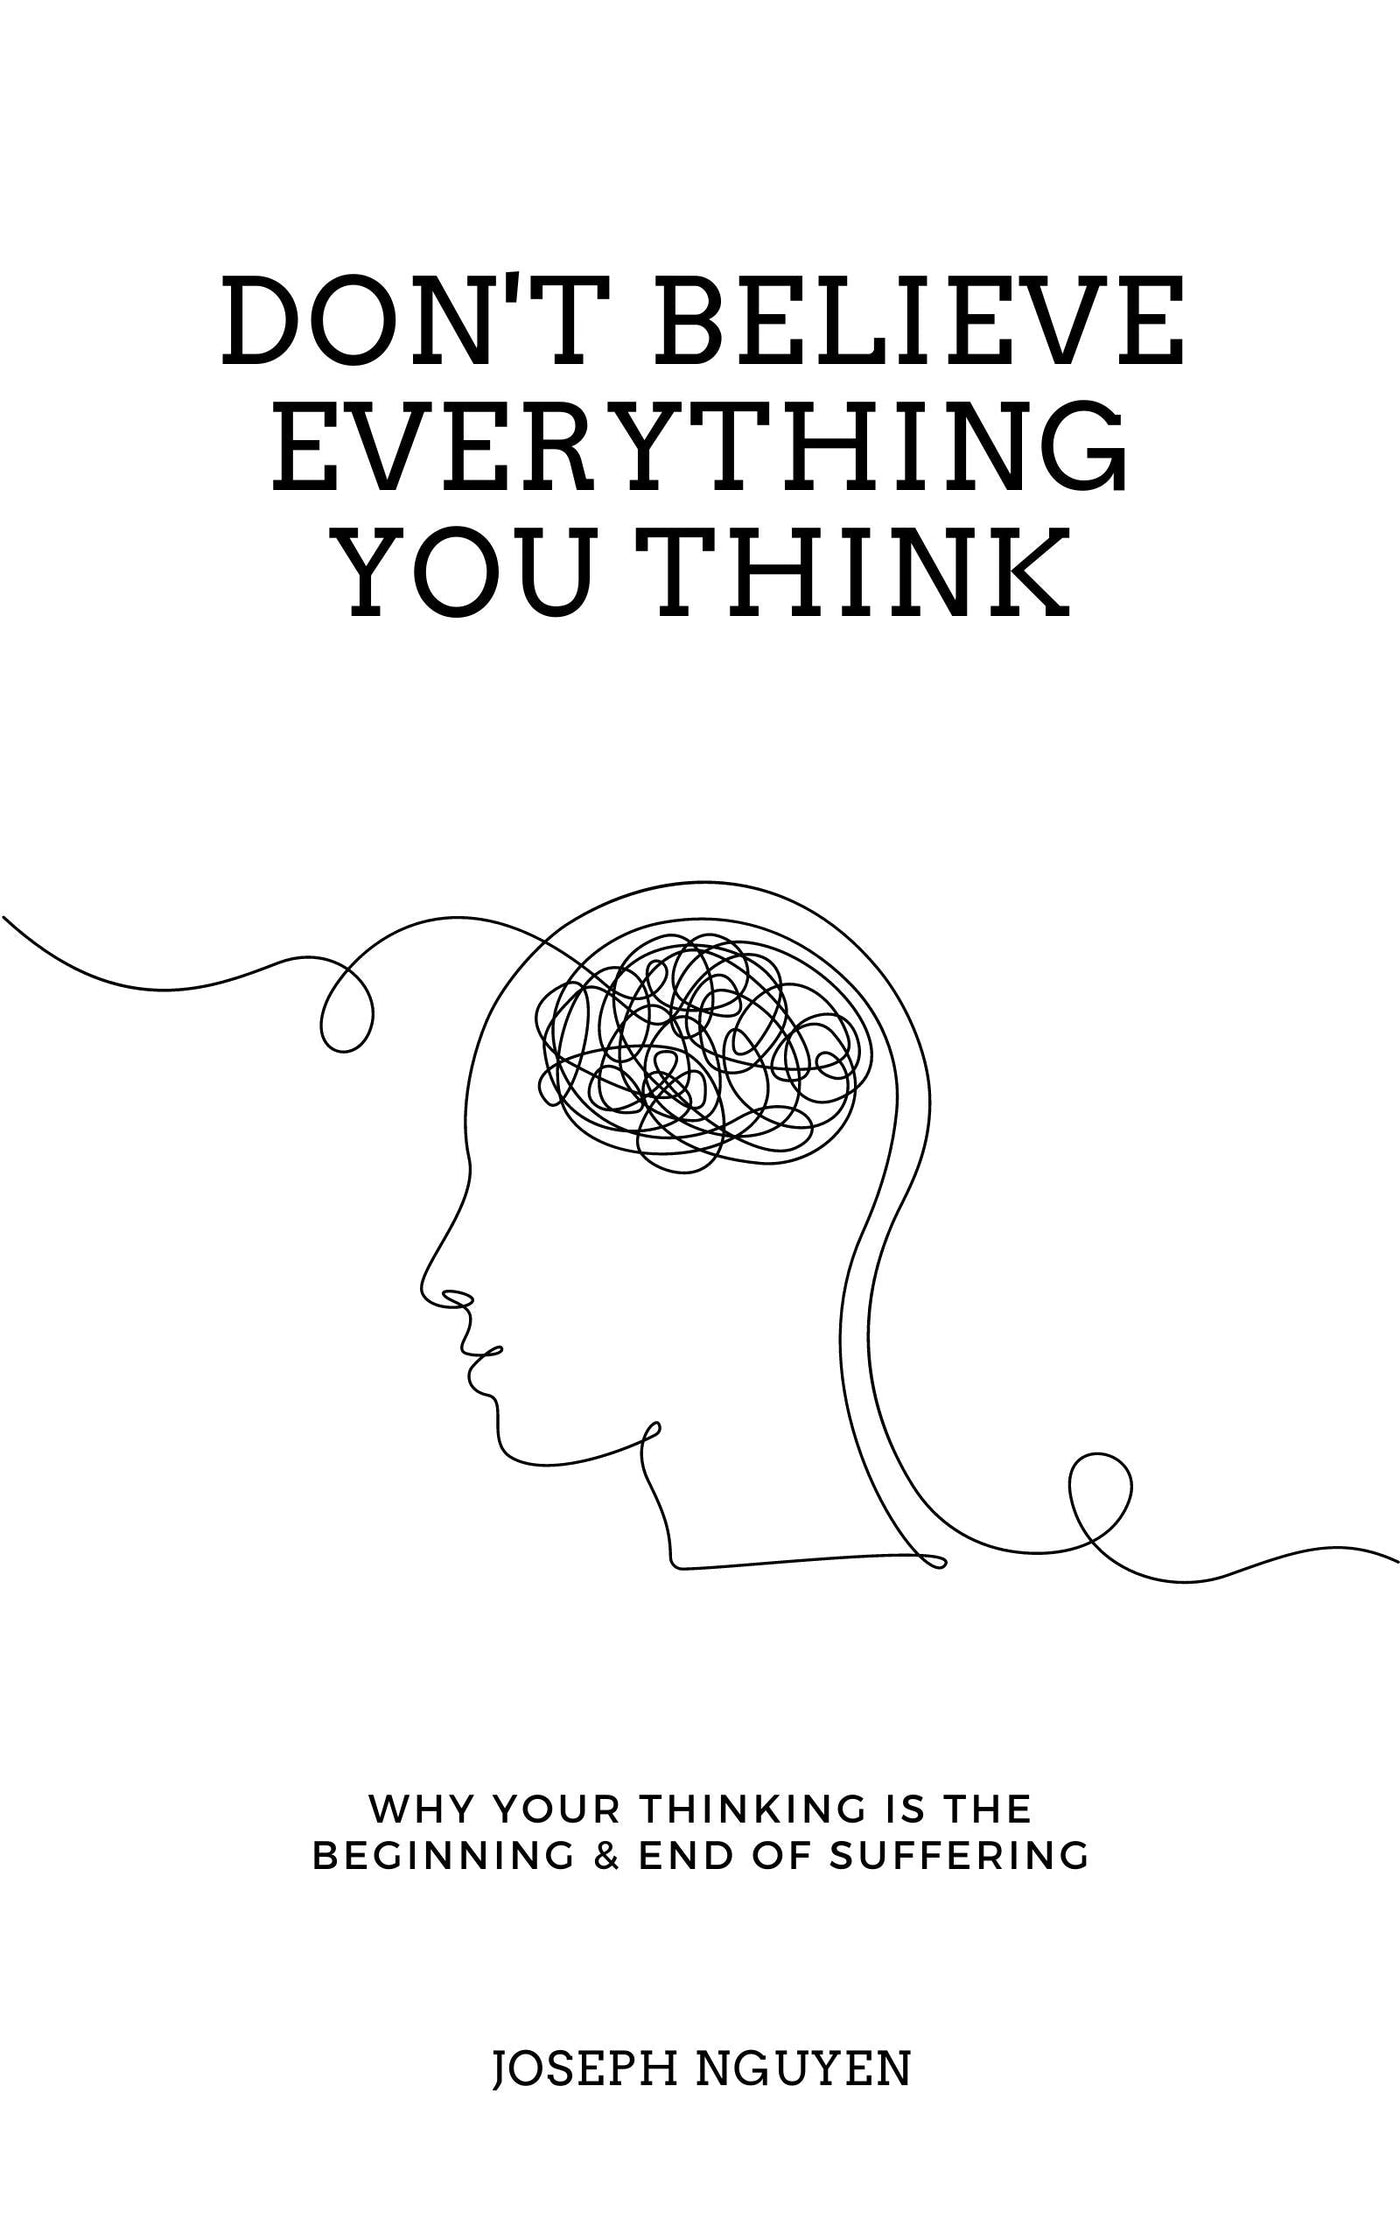 Don't Believe Everything You Think (Kindle & ePub) - Joseph Nguyen